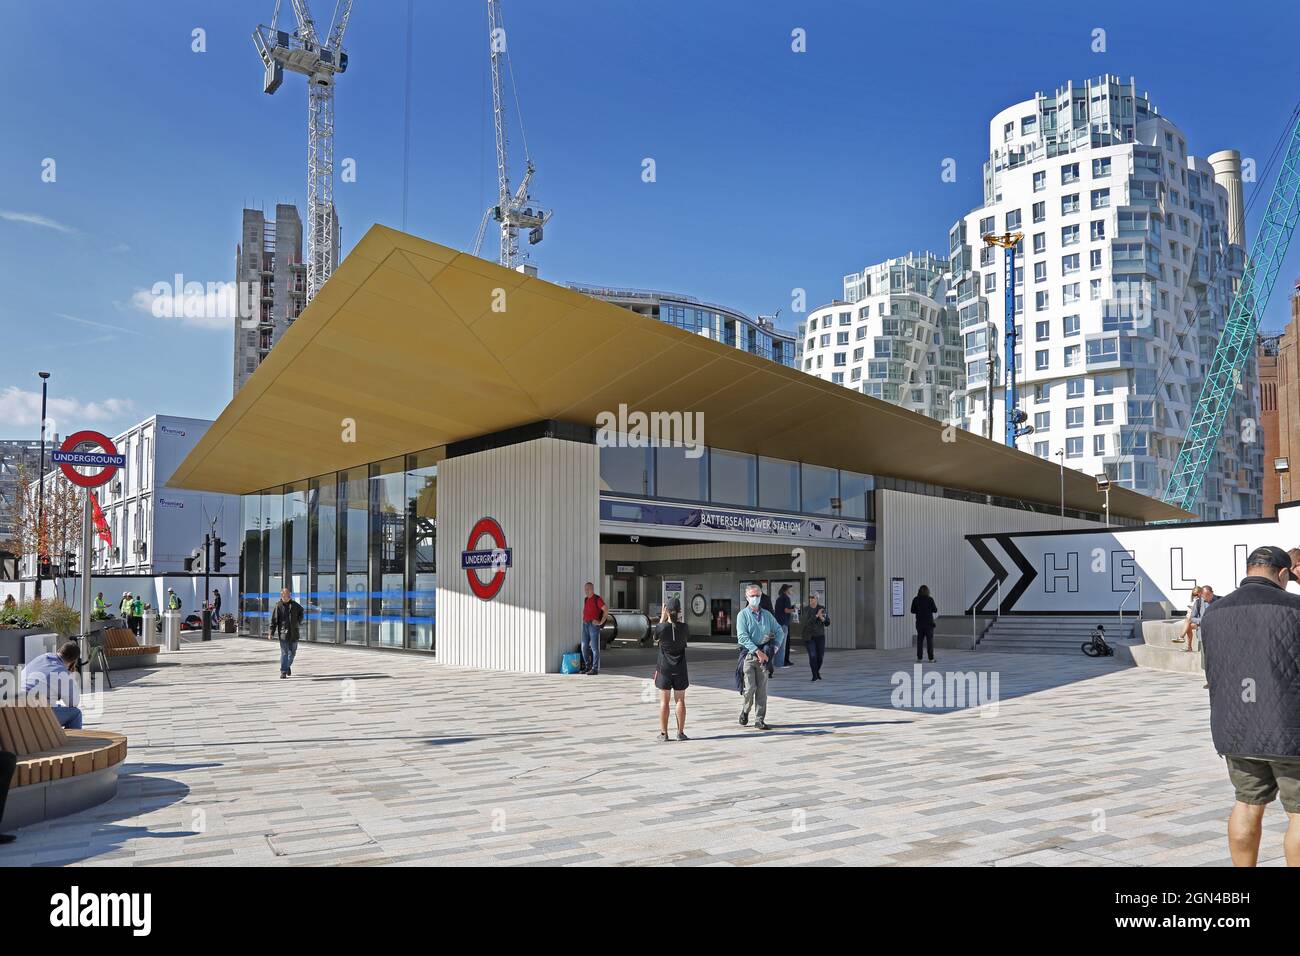 Ingresso alla nuova stazione della metropolitana di Londra presso la centrale elettrica di Battersea, Londra, Regno Unito. Aperto a settembre 2021. Parte della nuova estensione Northern Line. Foto Stock